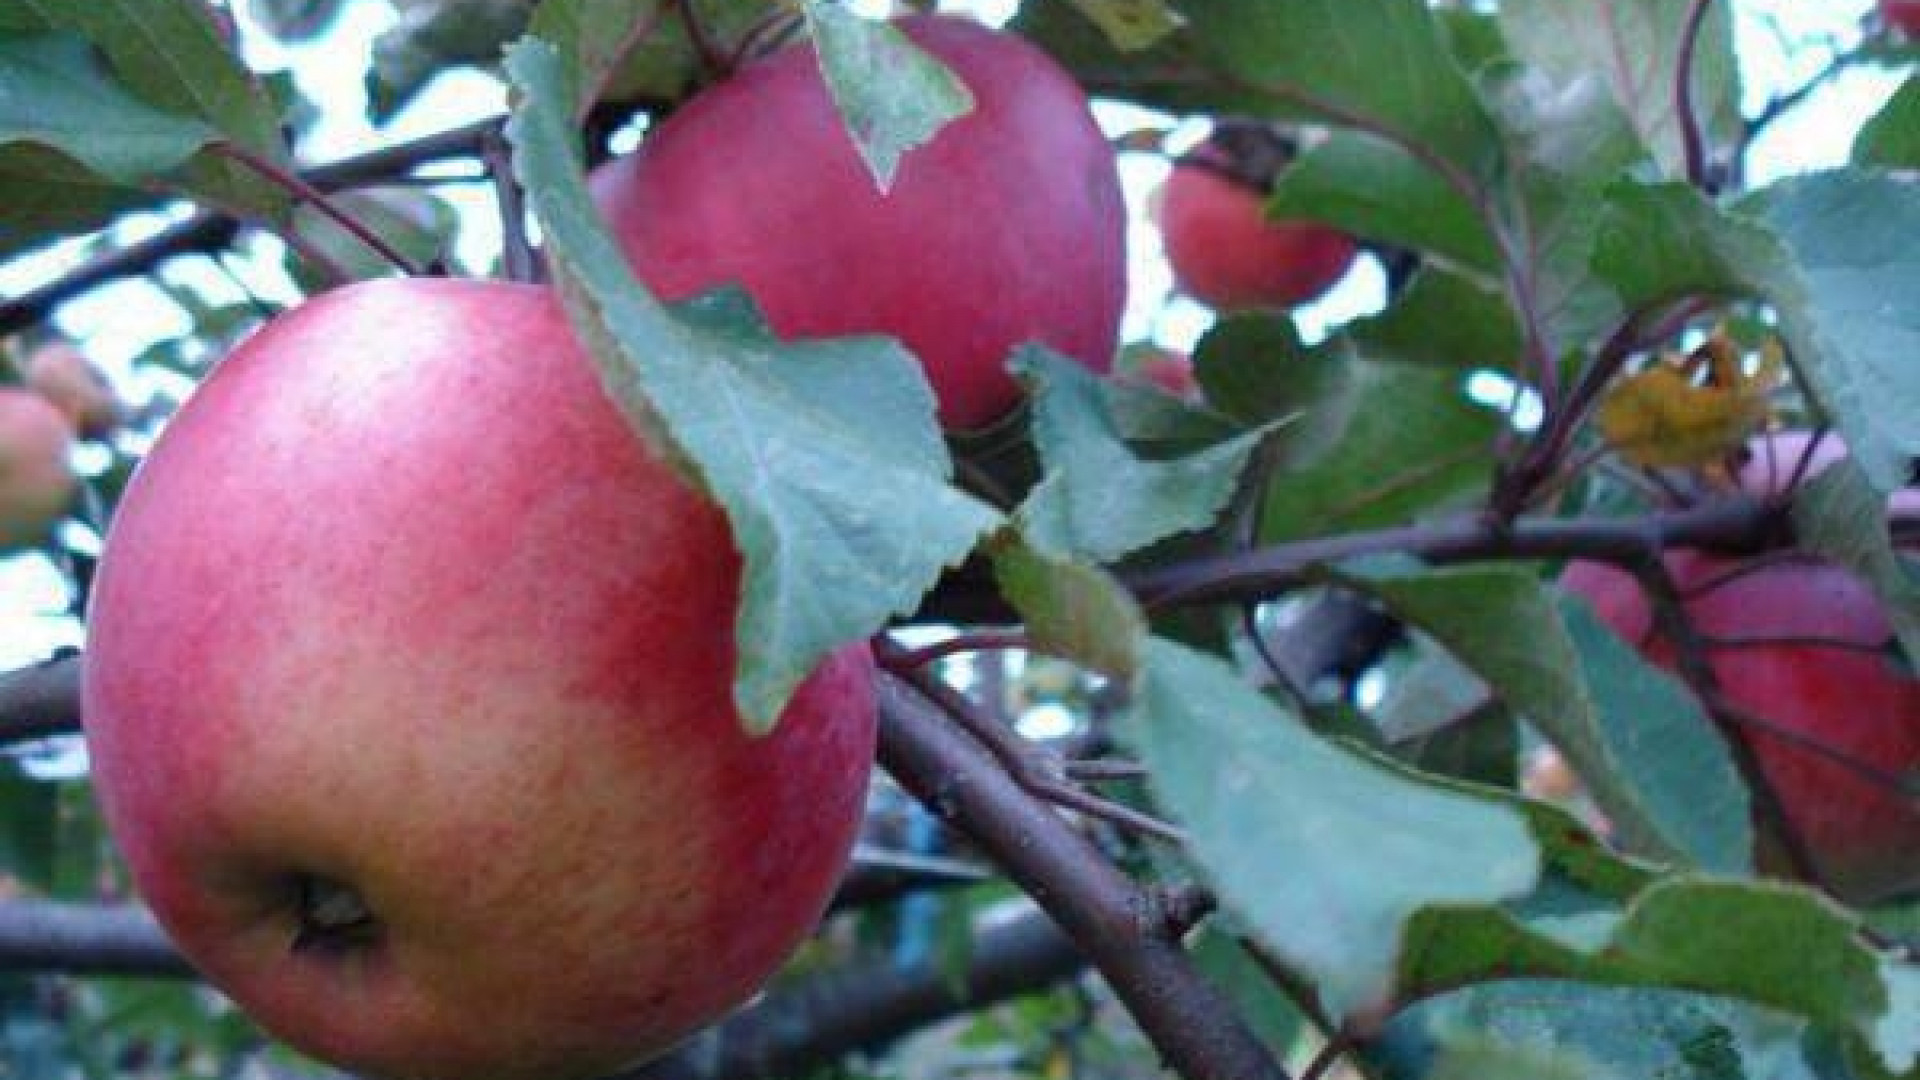 яблоки апорт фото и описание сорта